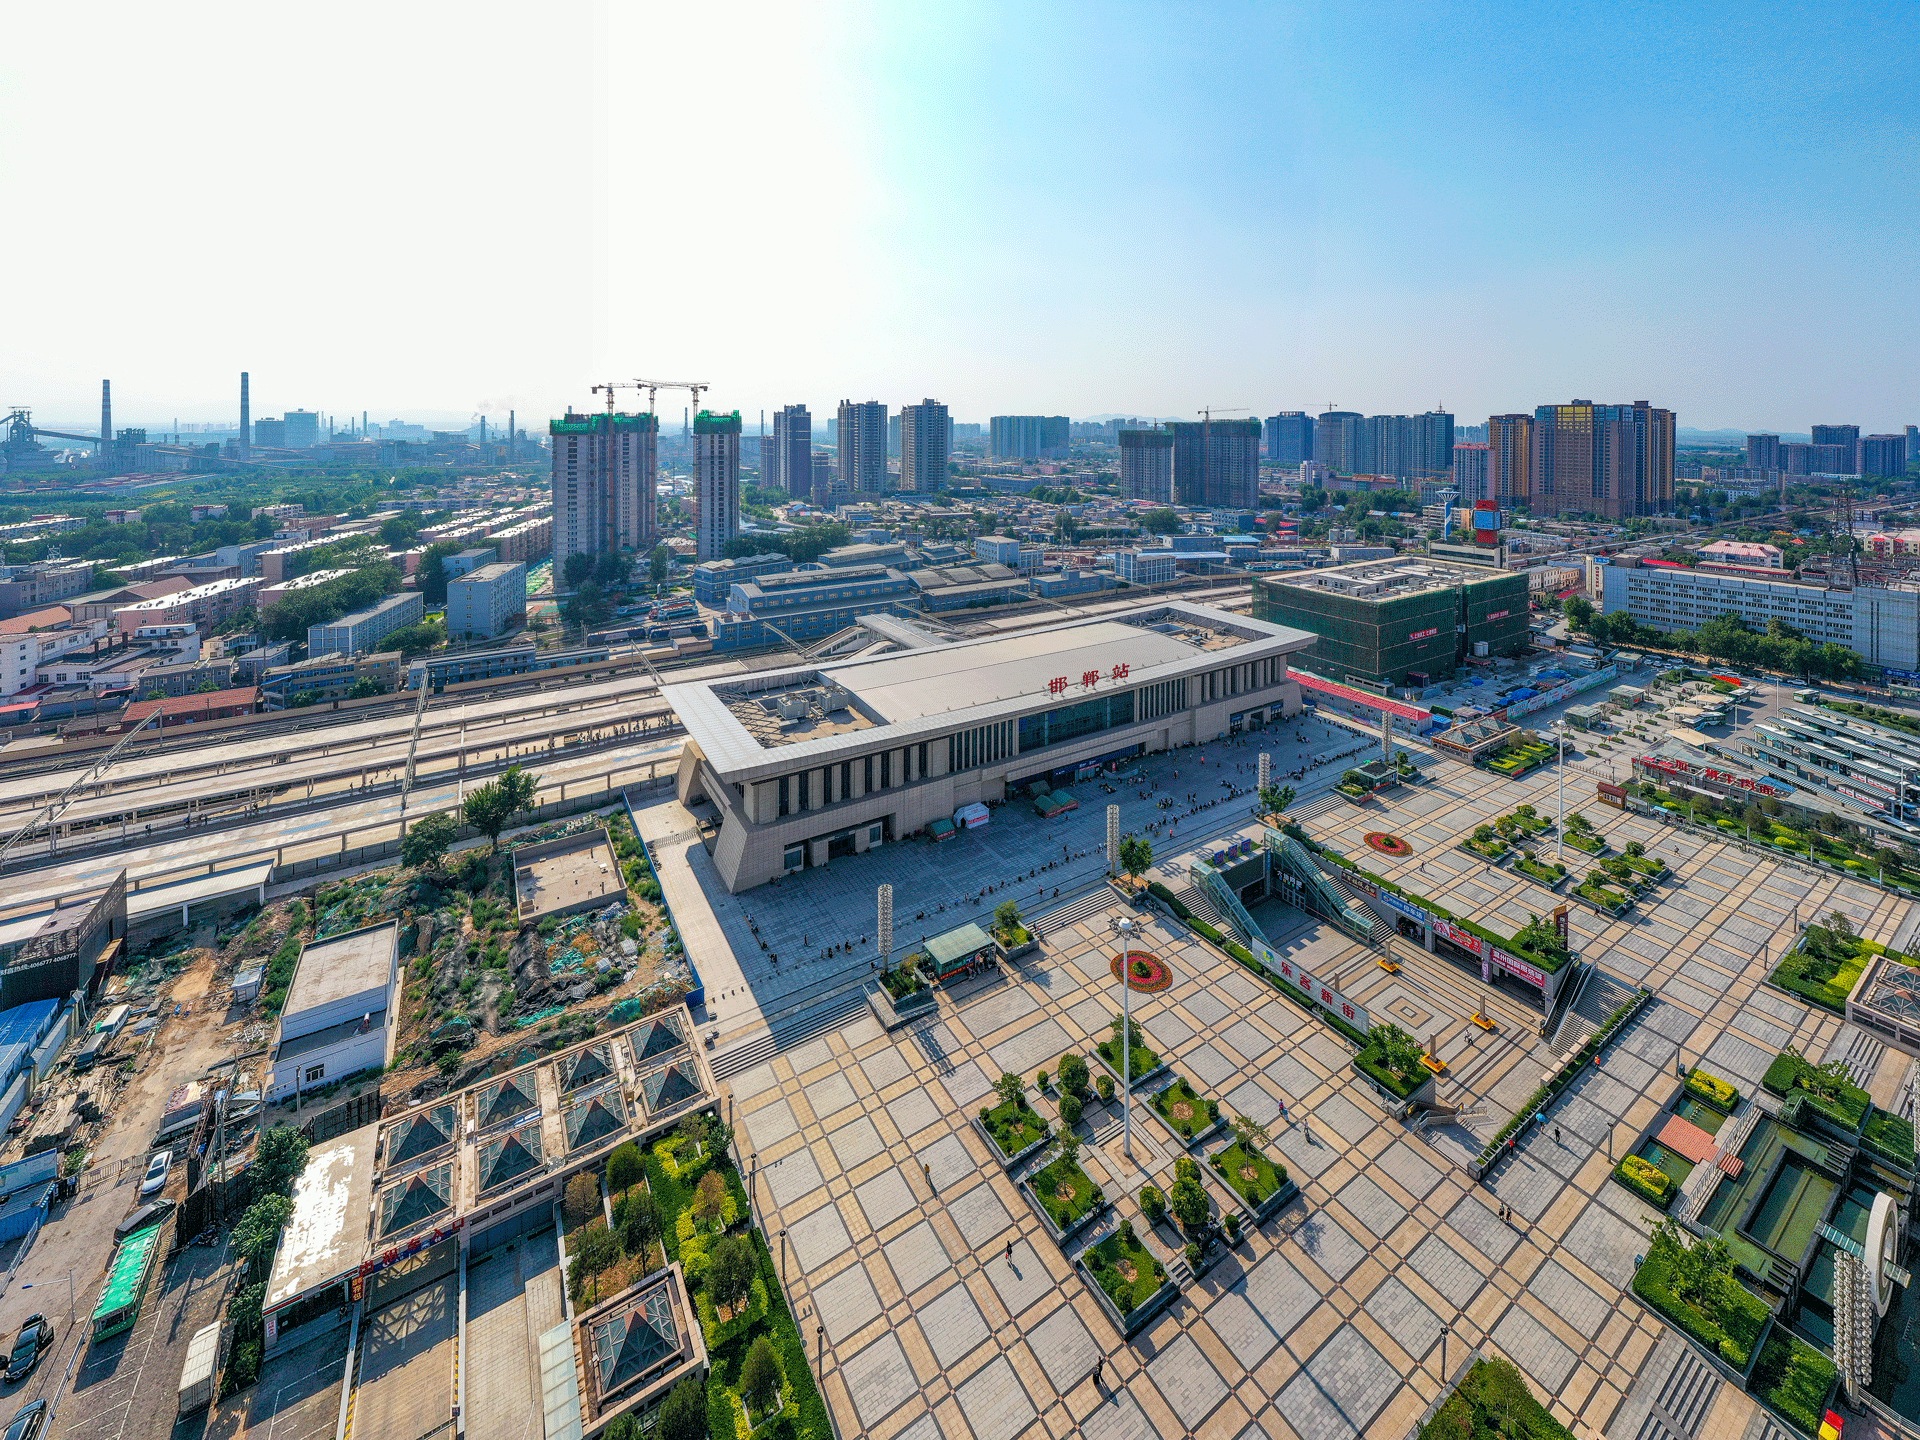 邯郸高铁站改扩建工程应用系统:tr65 直立锁边屋面系统应用部位:屋面